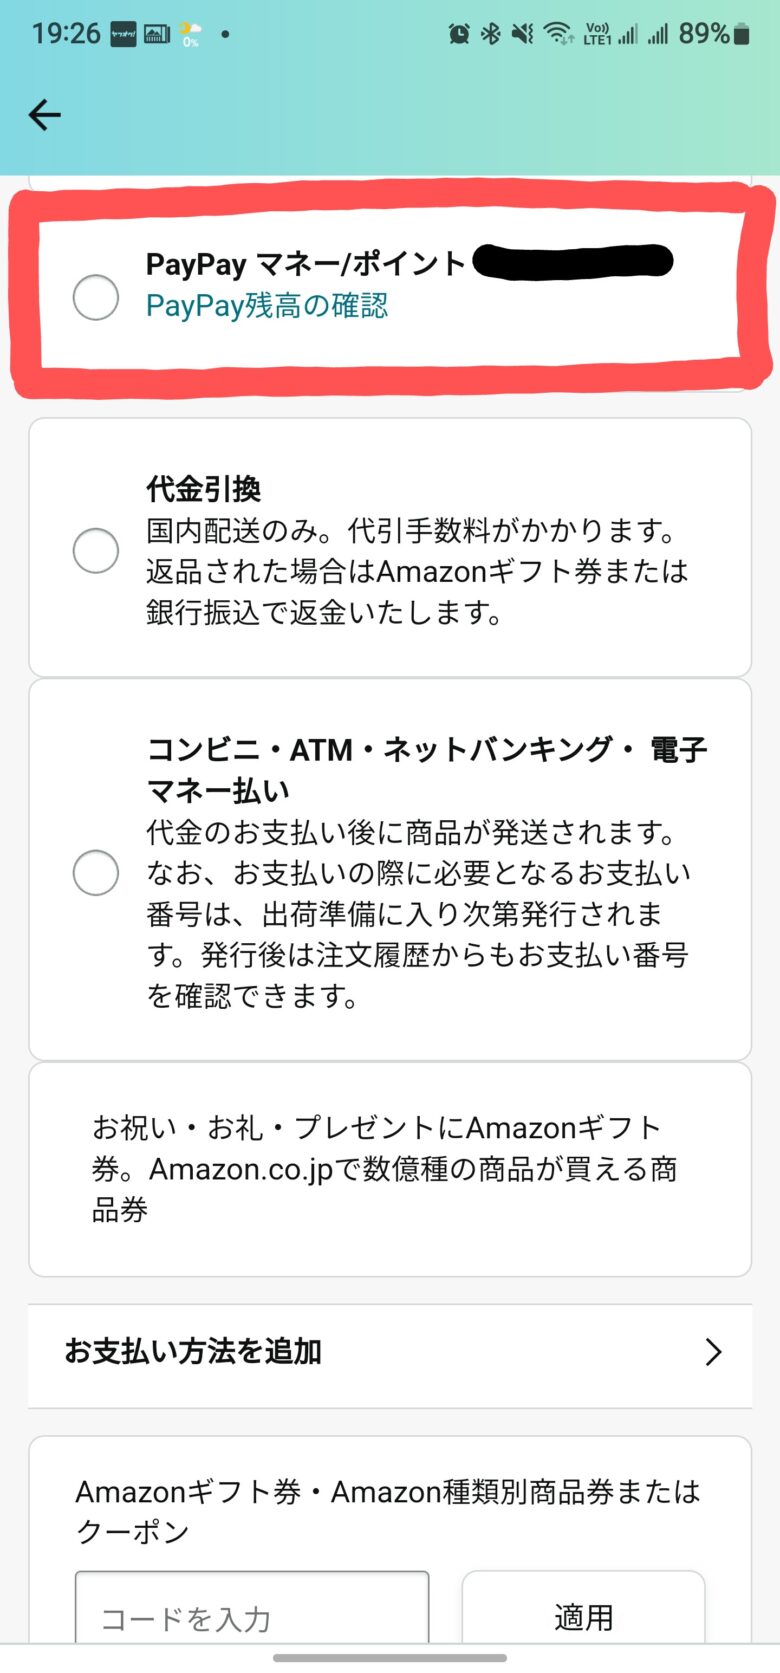 AmazonでPayPay支払いを登録する方法。Amazonの支払い方法設定画面その5。